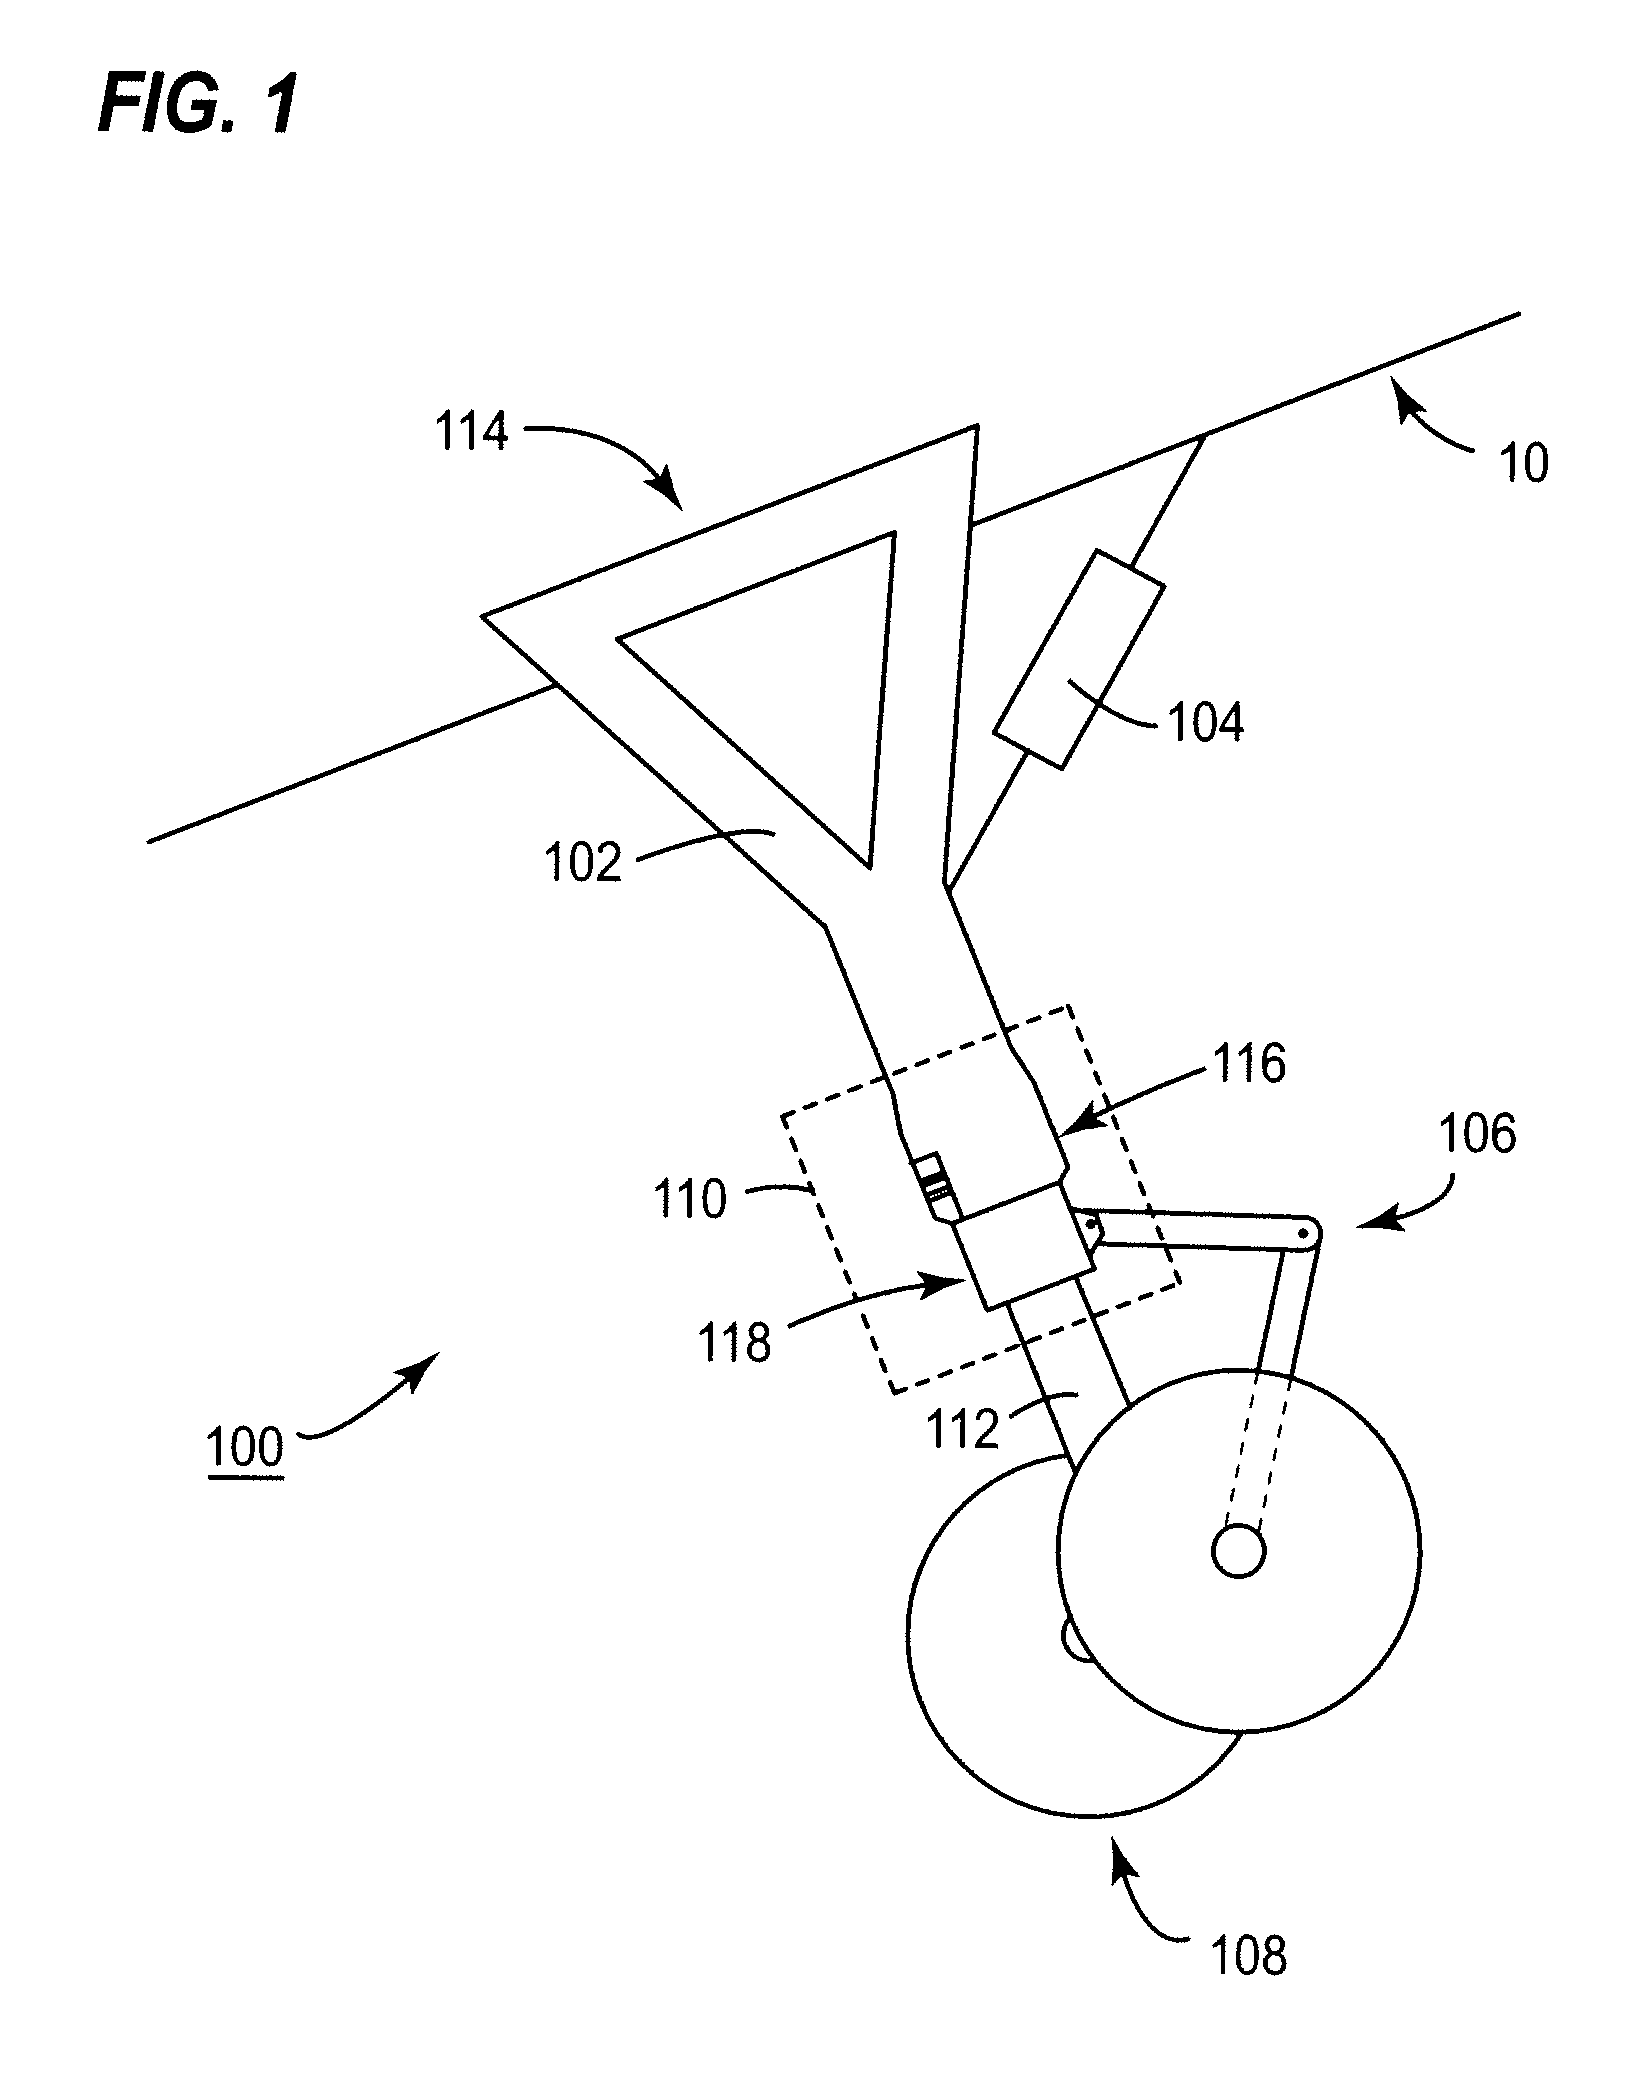 Aircraft landing gear steering system